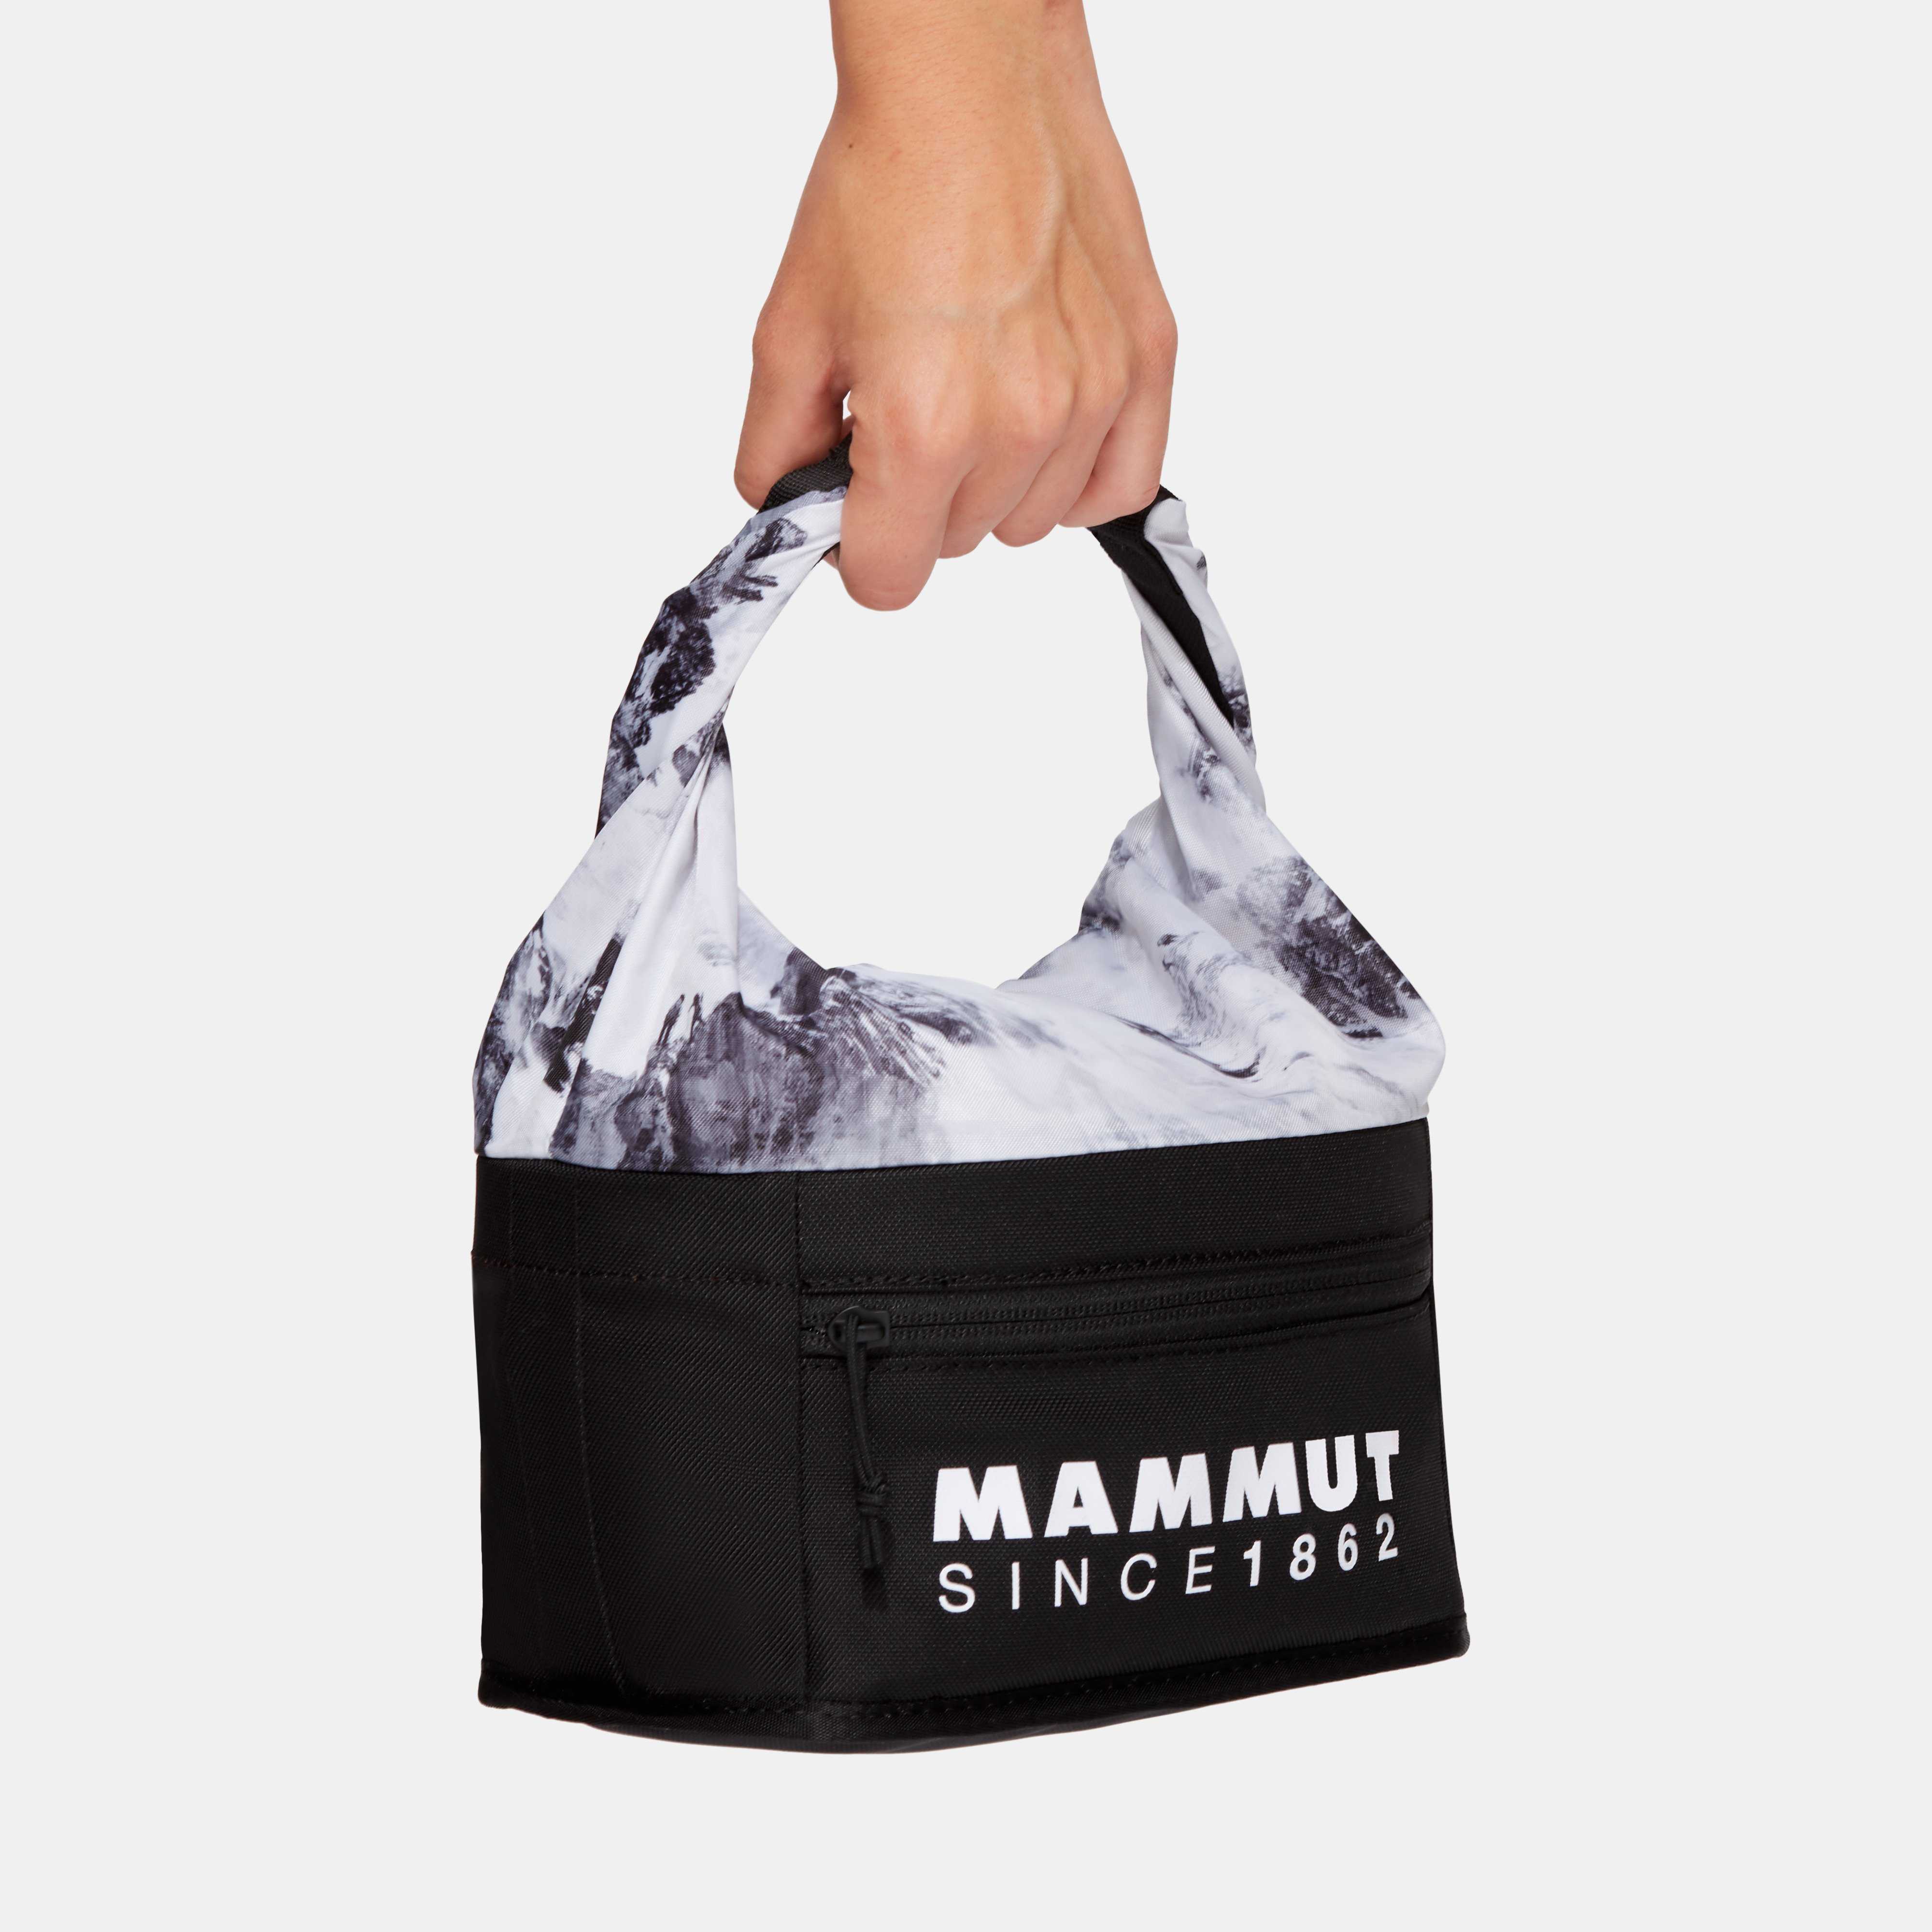 Mammut Boulder Cube Chalk Bag Black Tasche und Magnesium zum